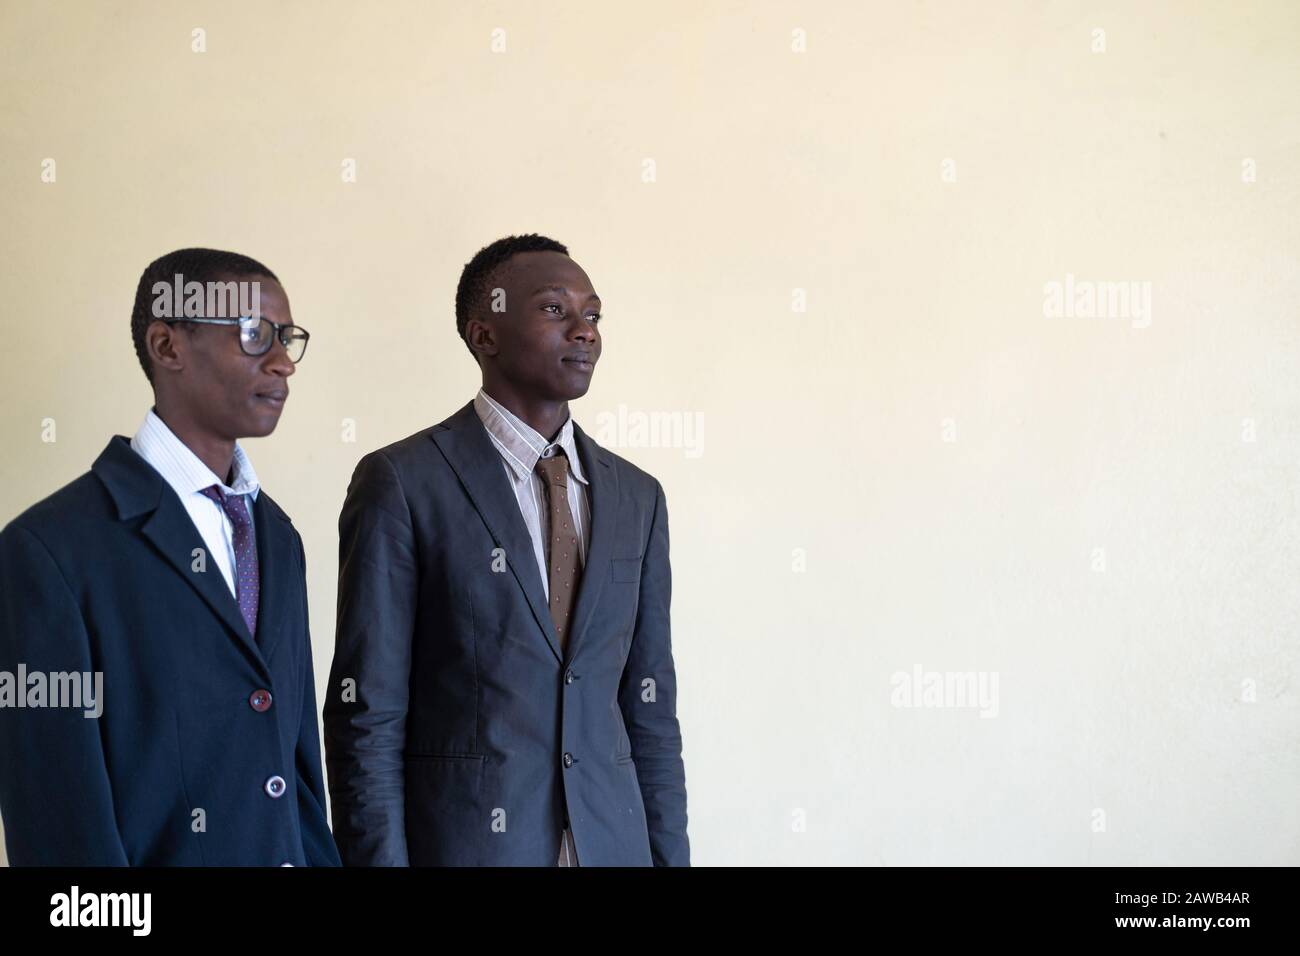 Ein paar Echte afrikanische Geschäftsleute mit Anzügen, Brille und Krawatten Stockfoto